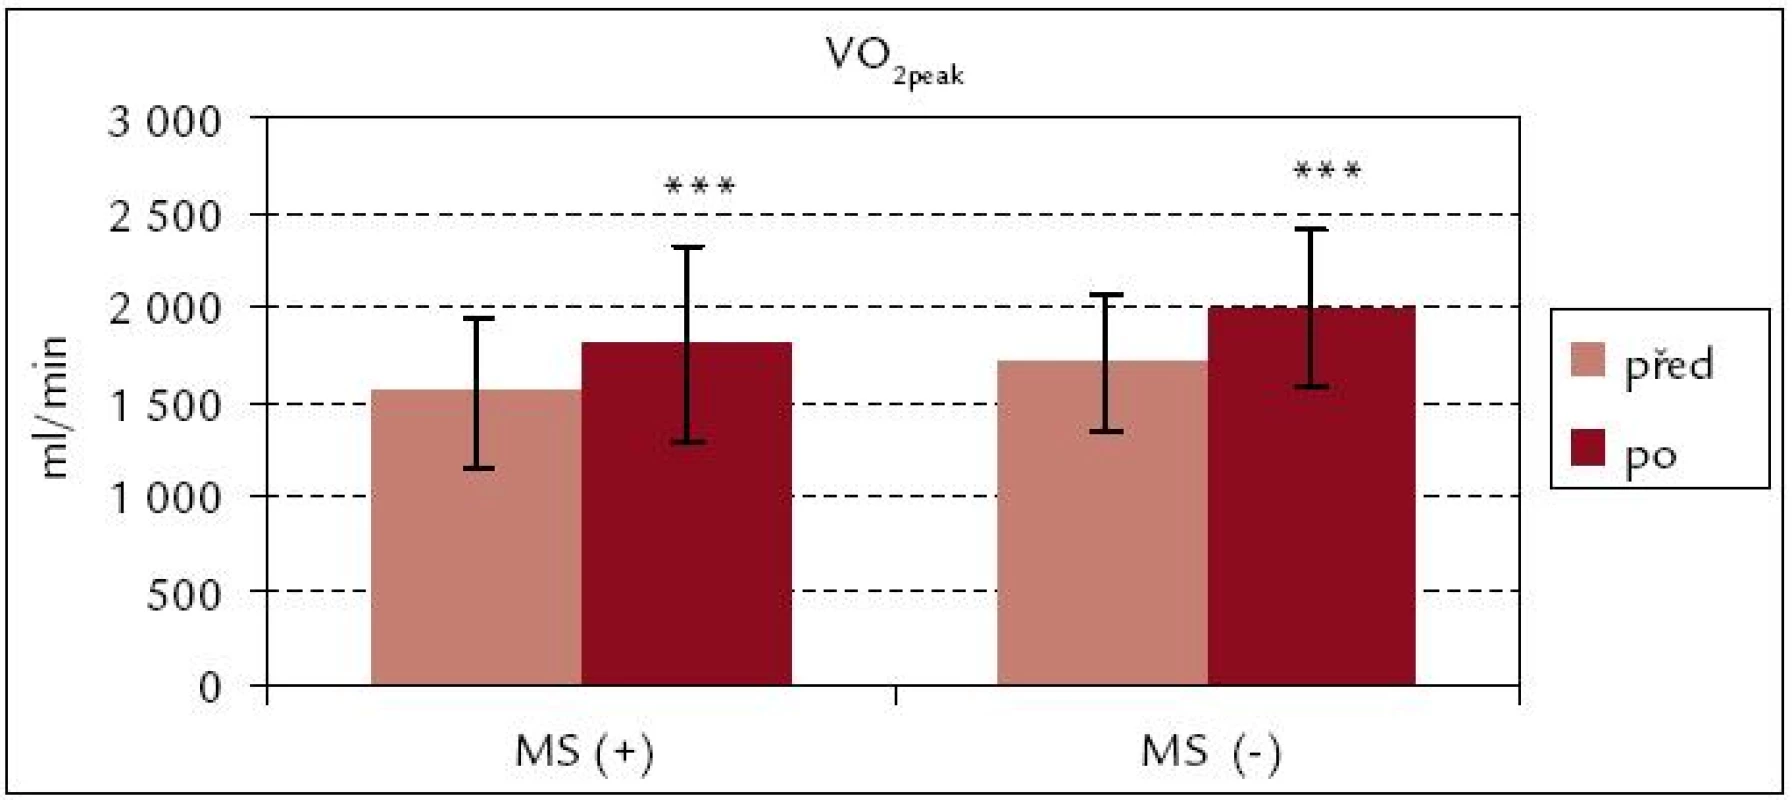 Vrcholová spotřeba kyslíku celková před rehabilitací a po ní – srovnání souborů MS(+) a MS(–).
*** p &lt; 0,001